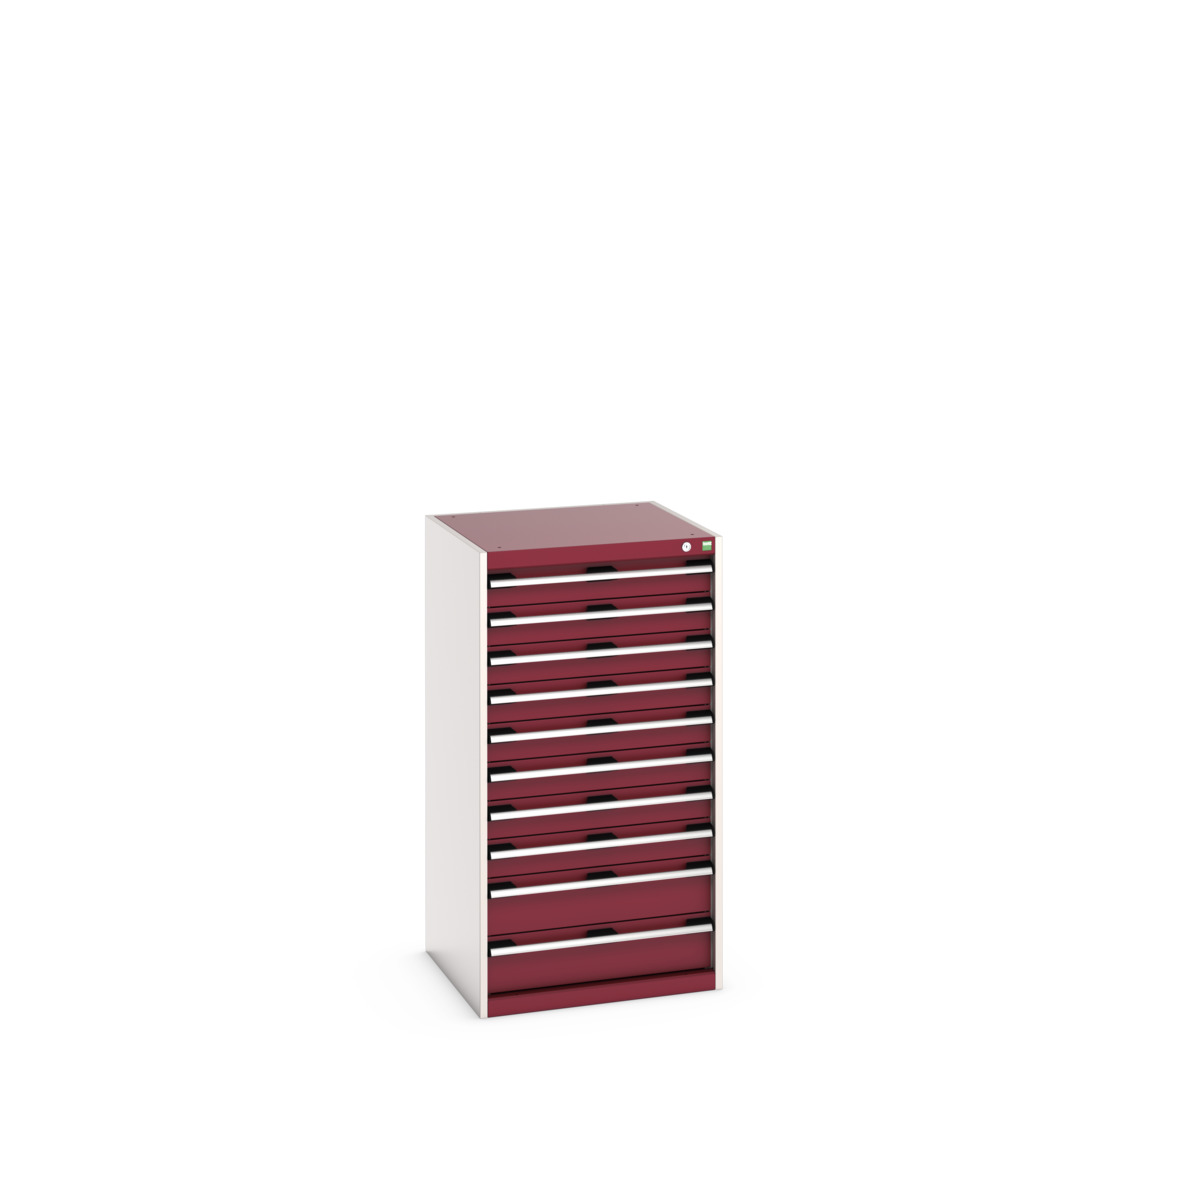 40019075.24V - cubio drawer cabinet